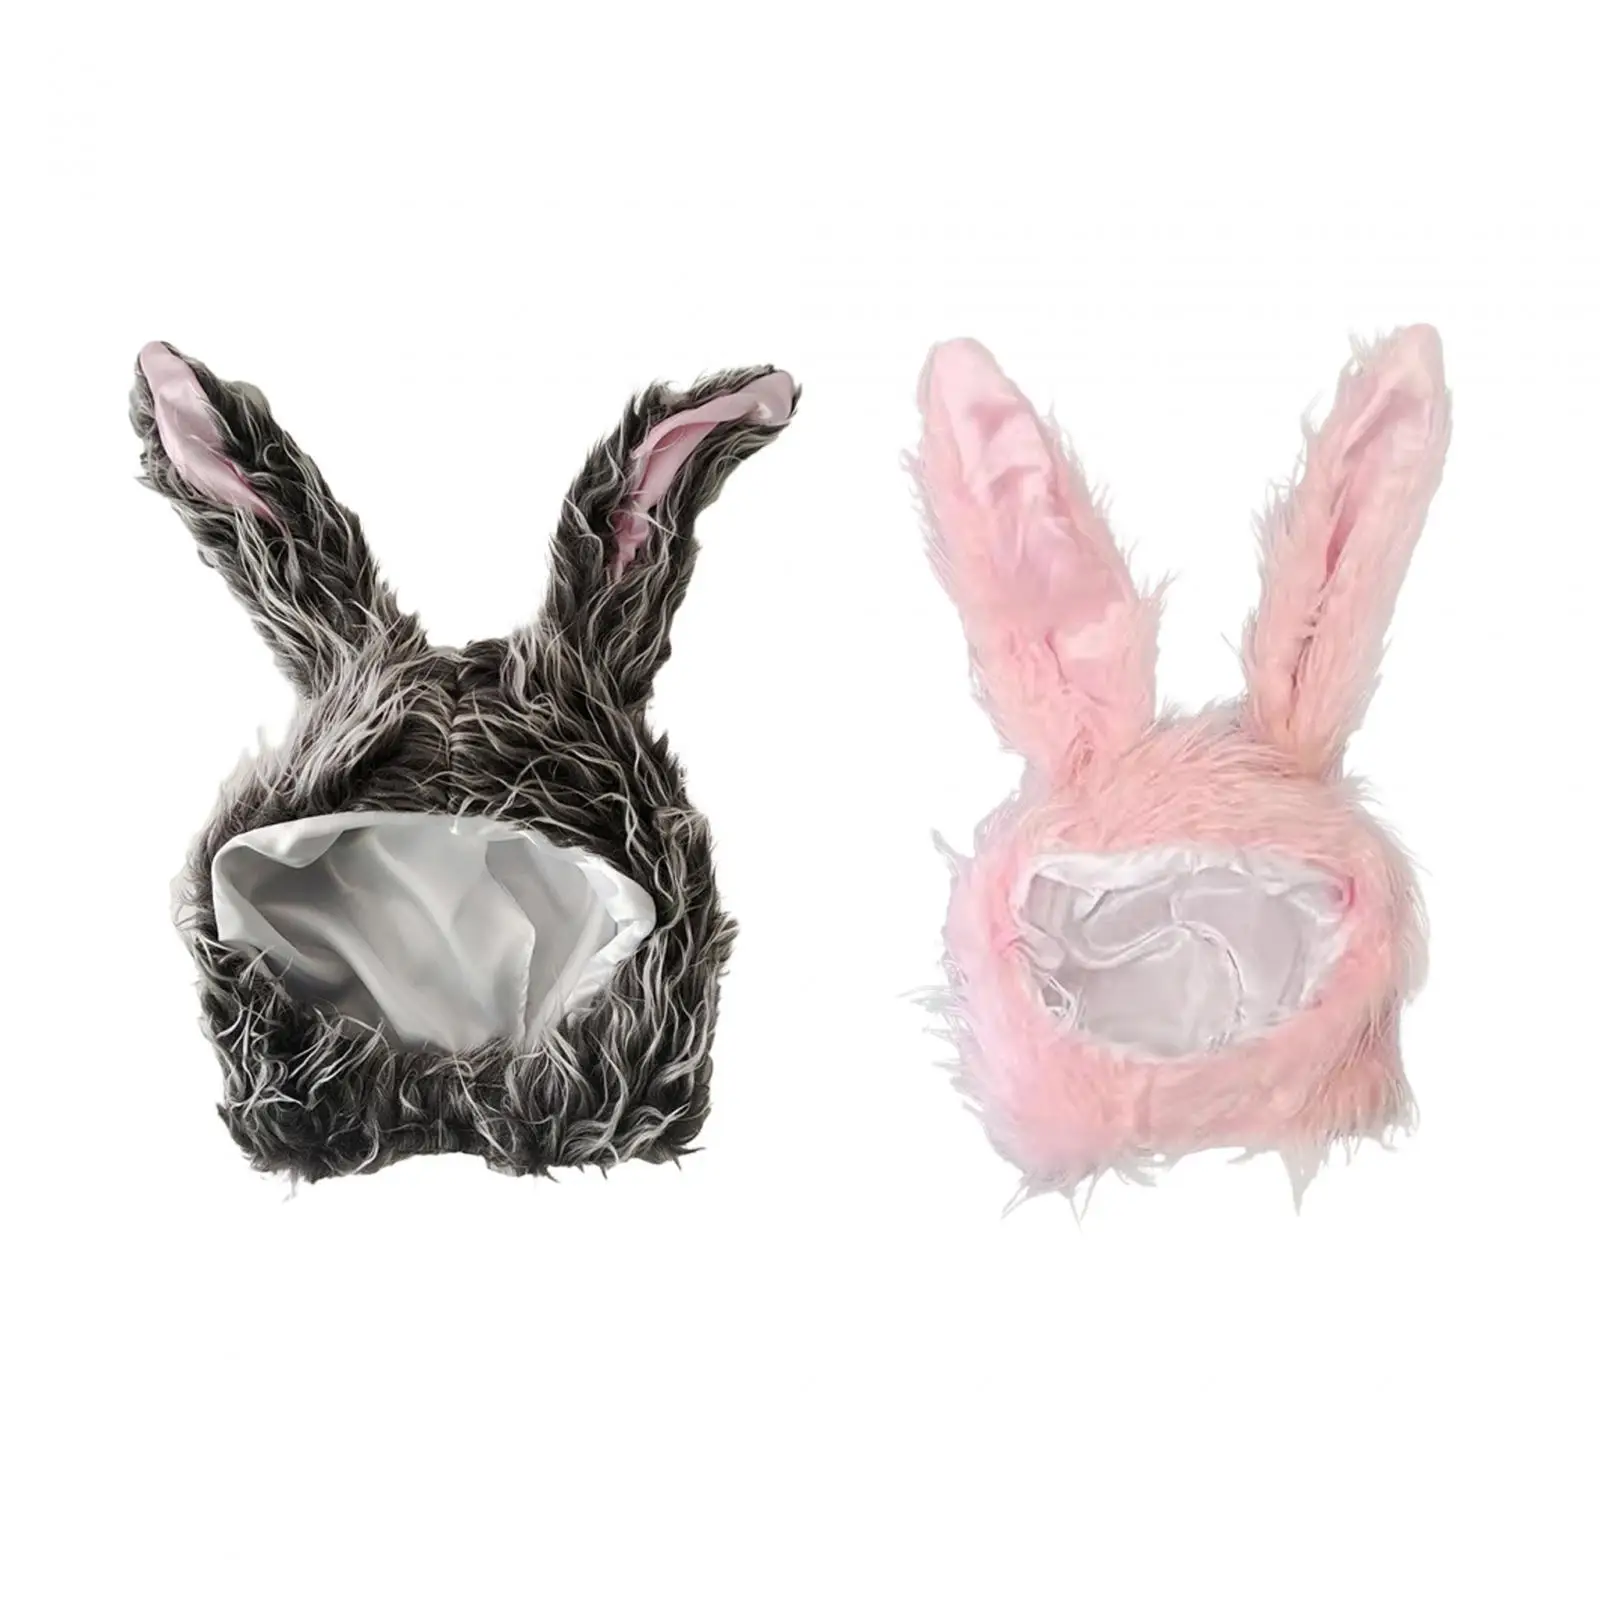 Rabbit Ears Hat Plush Costume Decoration Easter Warm Long Photo Props Headwear for Kids Halloween Fancy Dress Party Women Girls